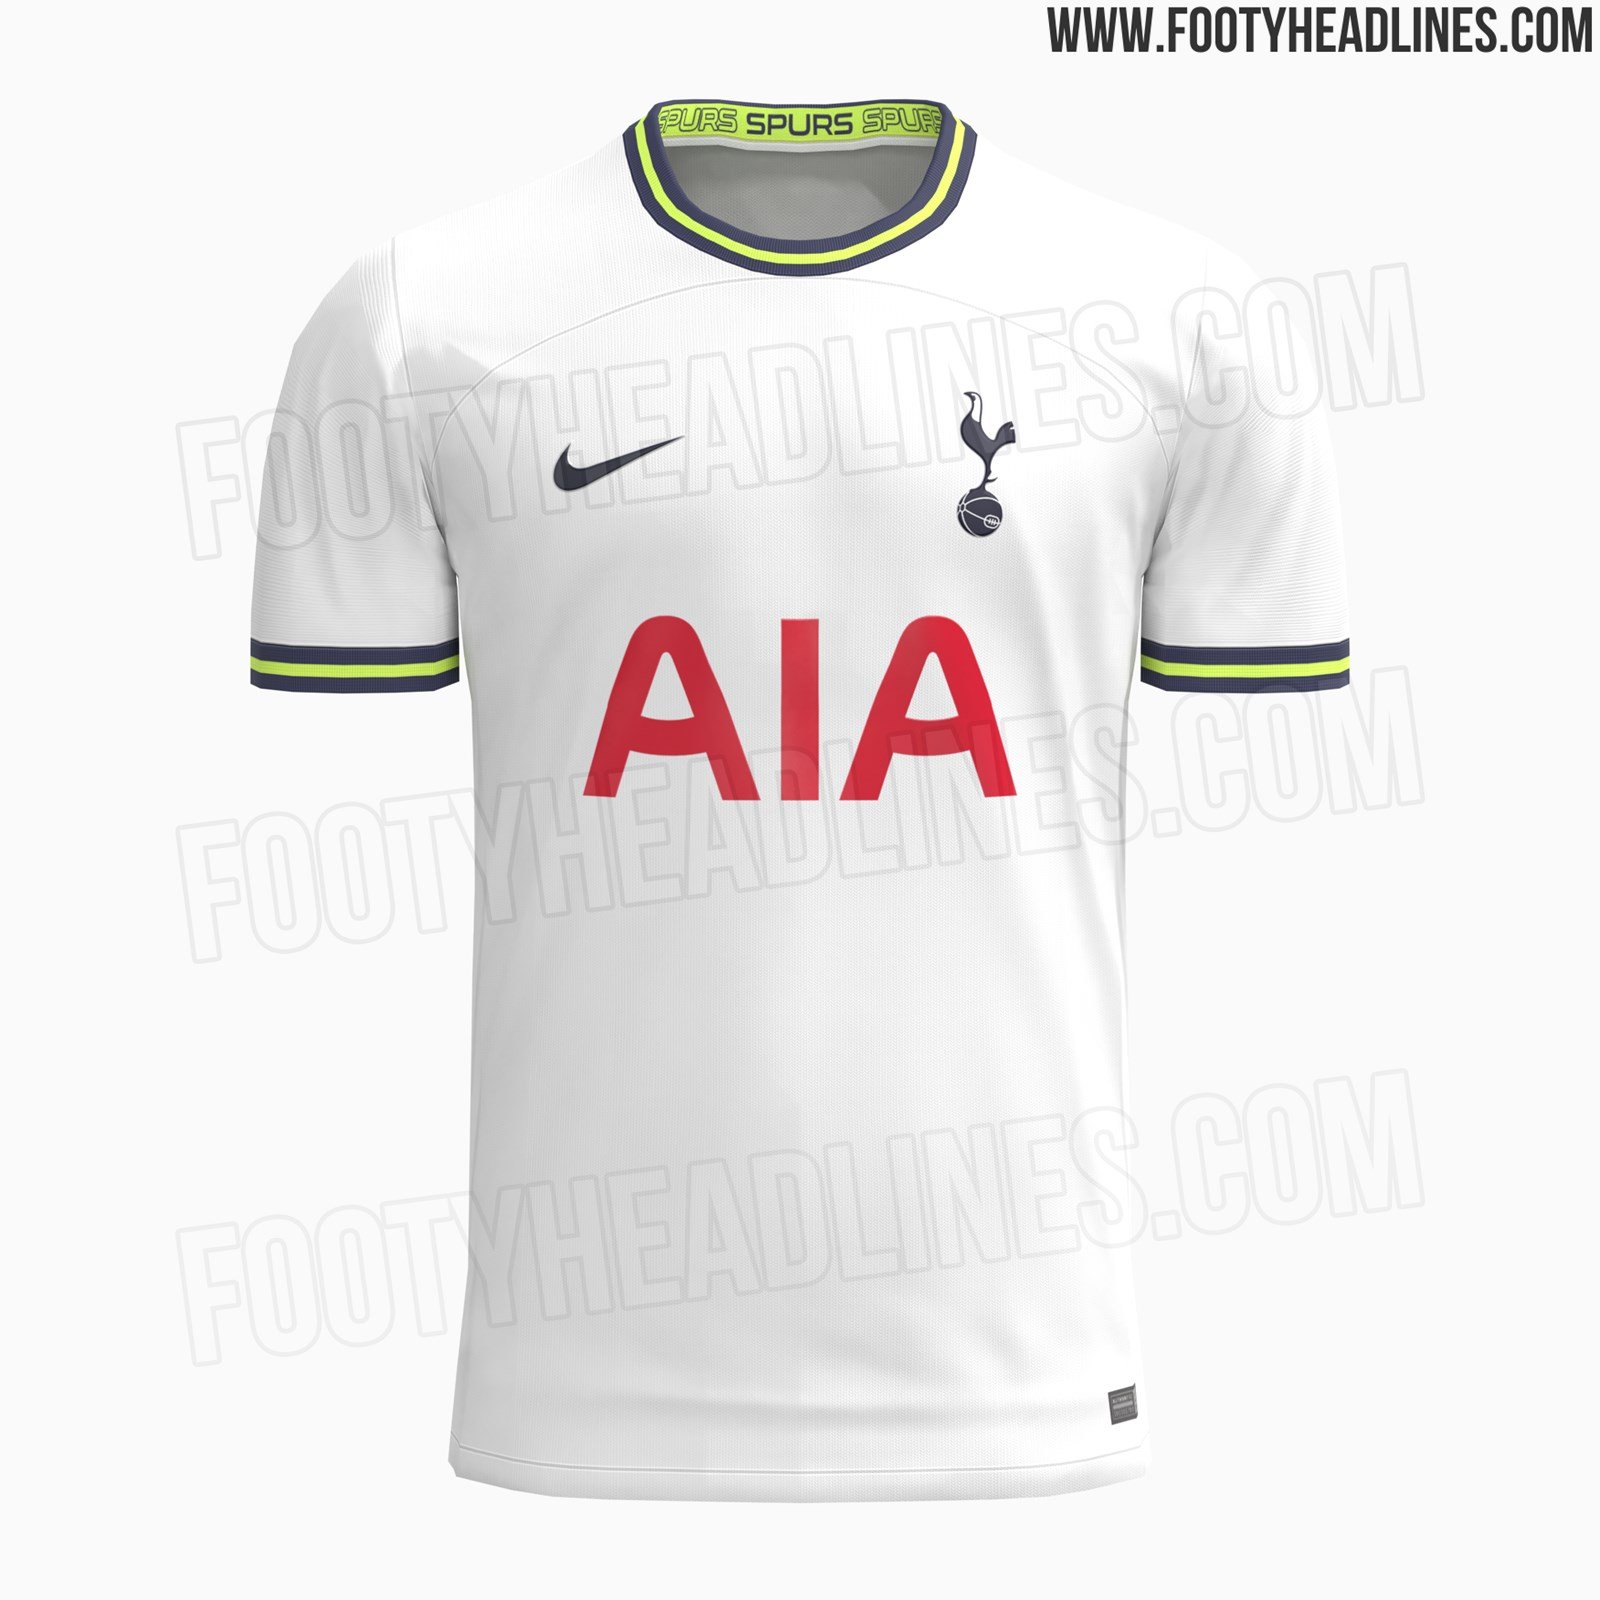 New 'leaked' images of bold Tottenham 2021/22 third shirt emerge